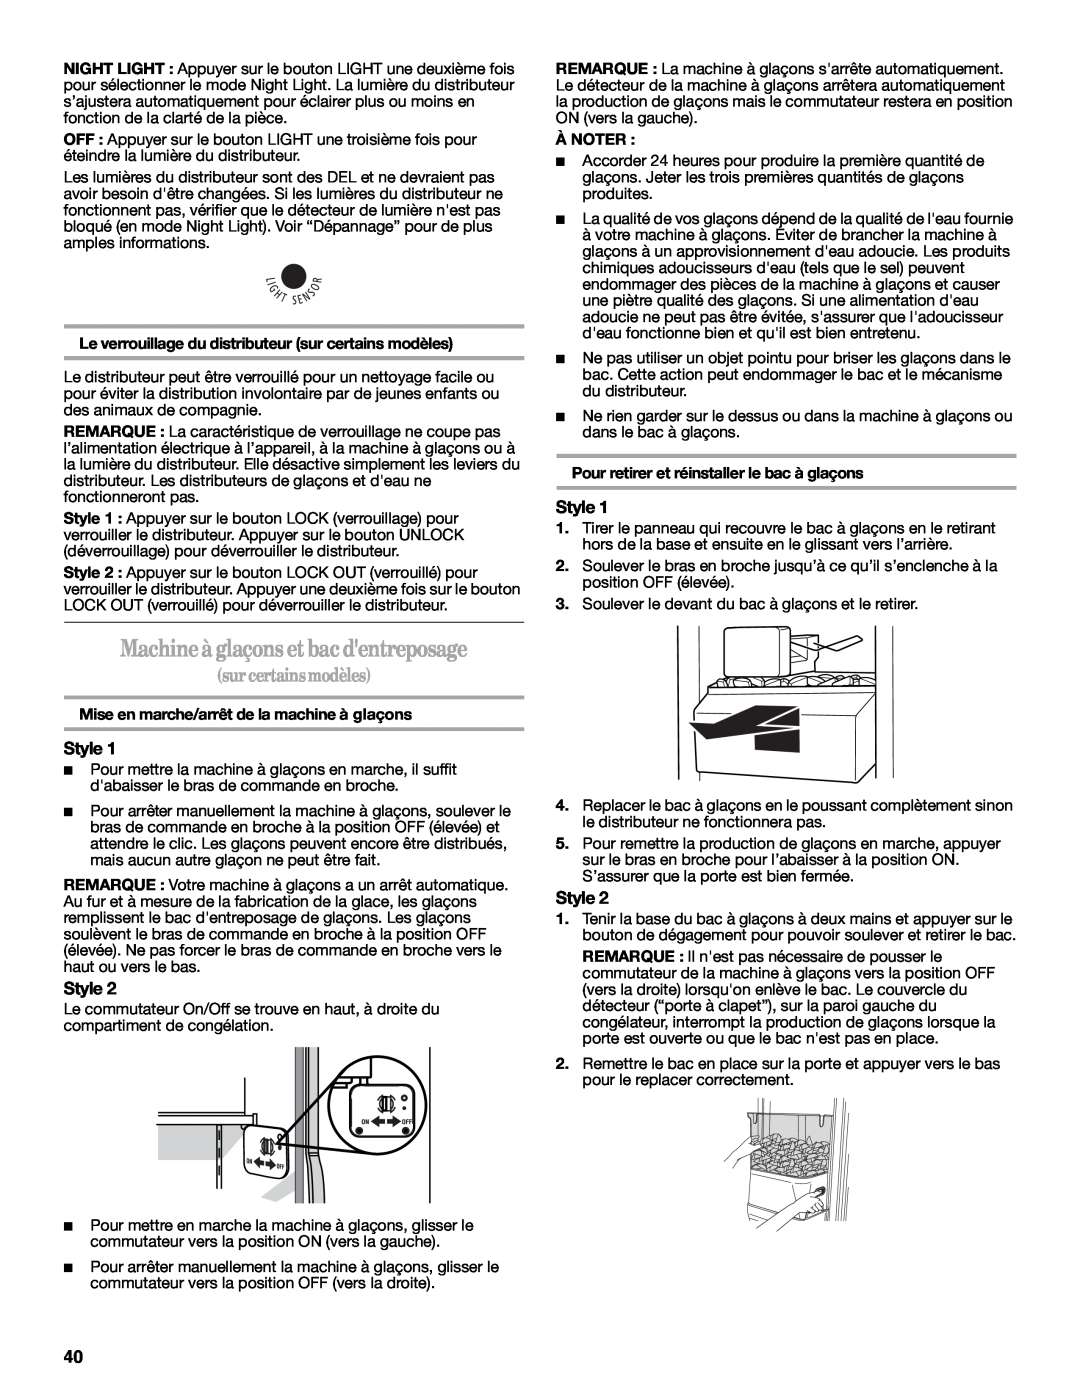 Amana W10237708A, W10237701A installation instructions Machine à glaçons et bac dentreposage, surcertainsmodèles, À Noter 